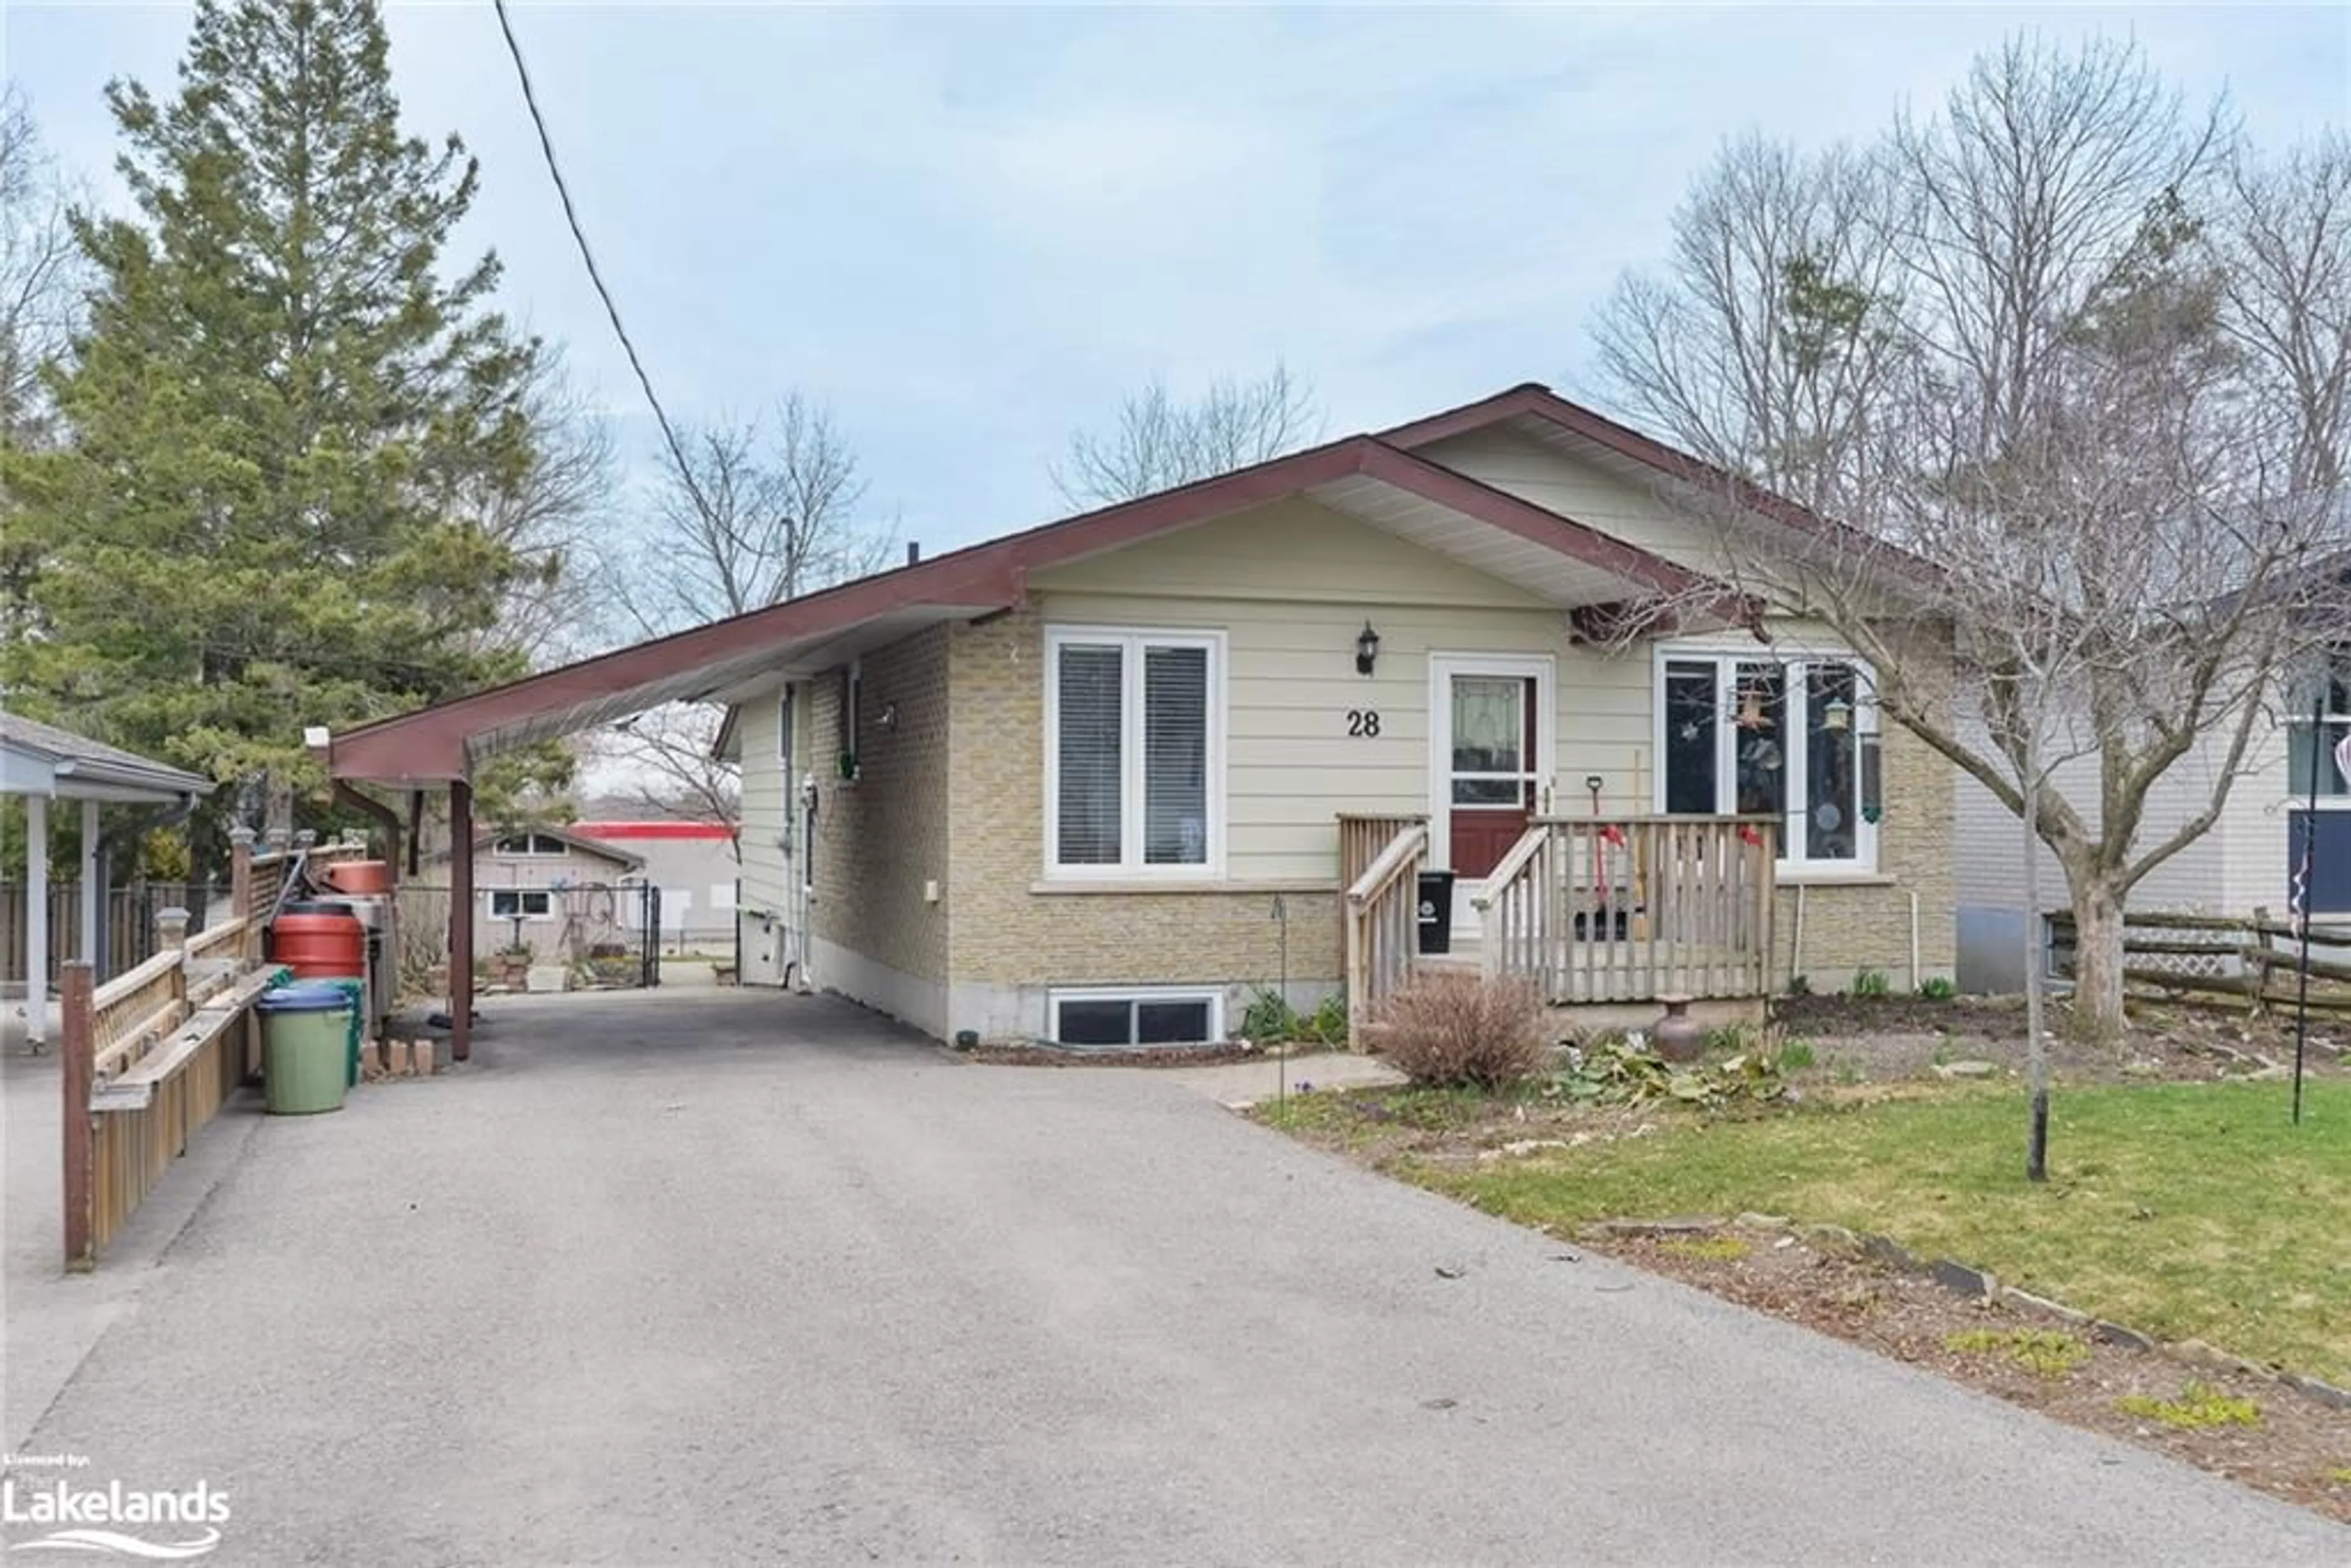 Frontside or backside of a home for 28 Carleton St, Orillia Ontario L3V 6S7